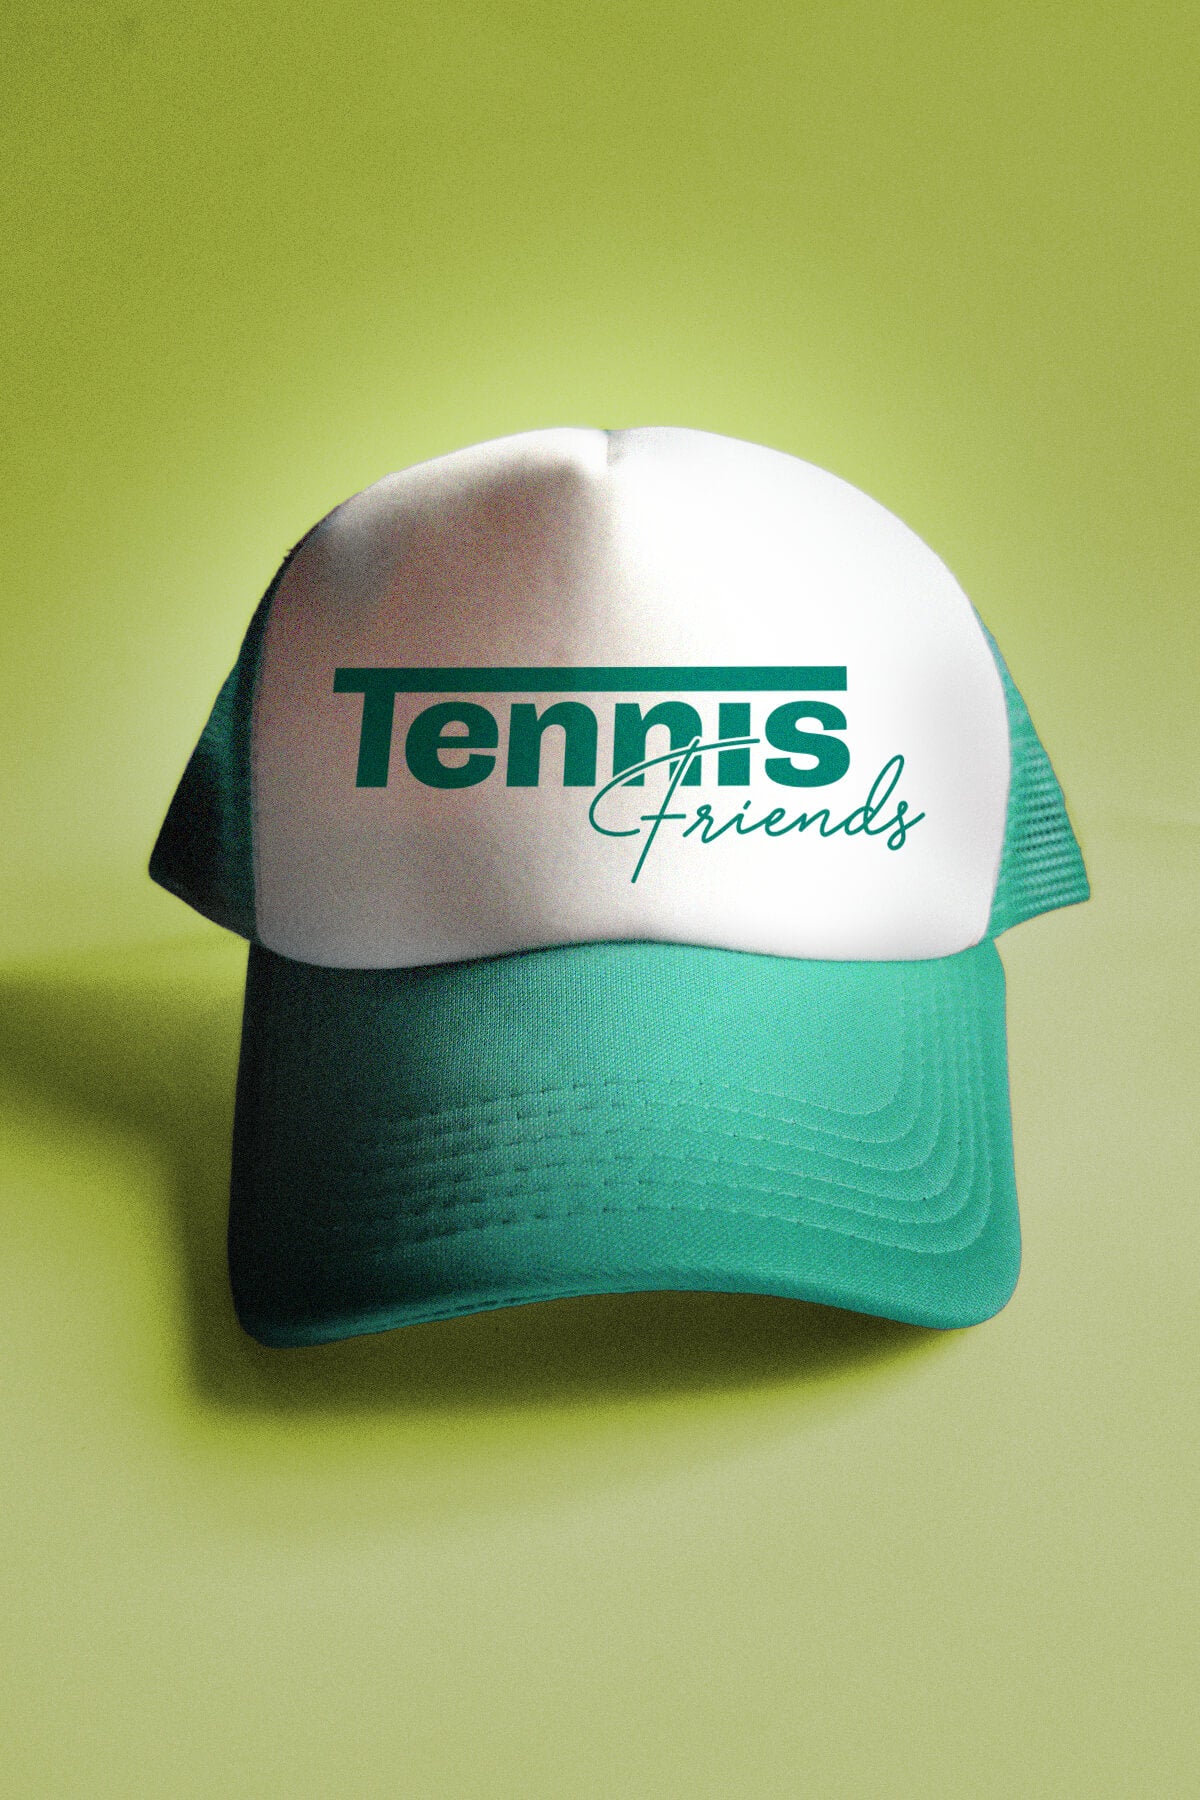 Tennis Friends Trucker Hat in Teal